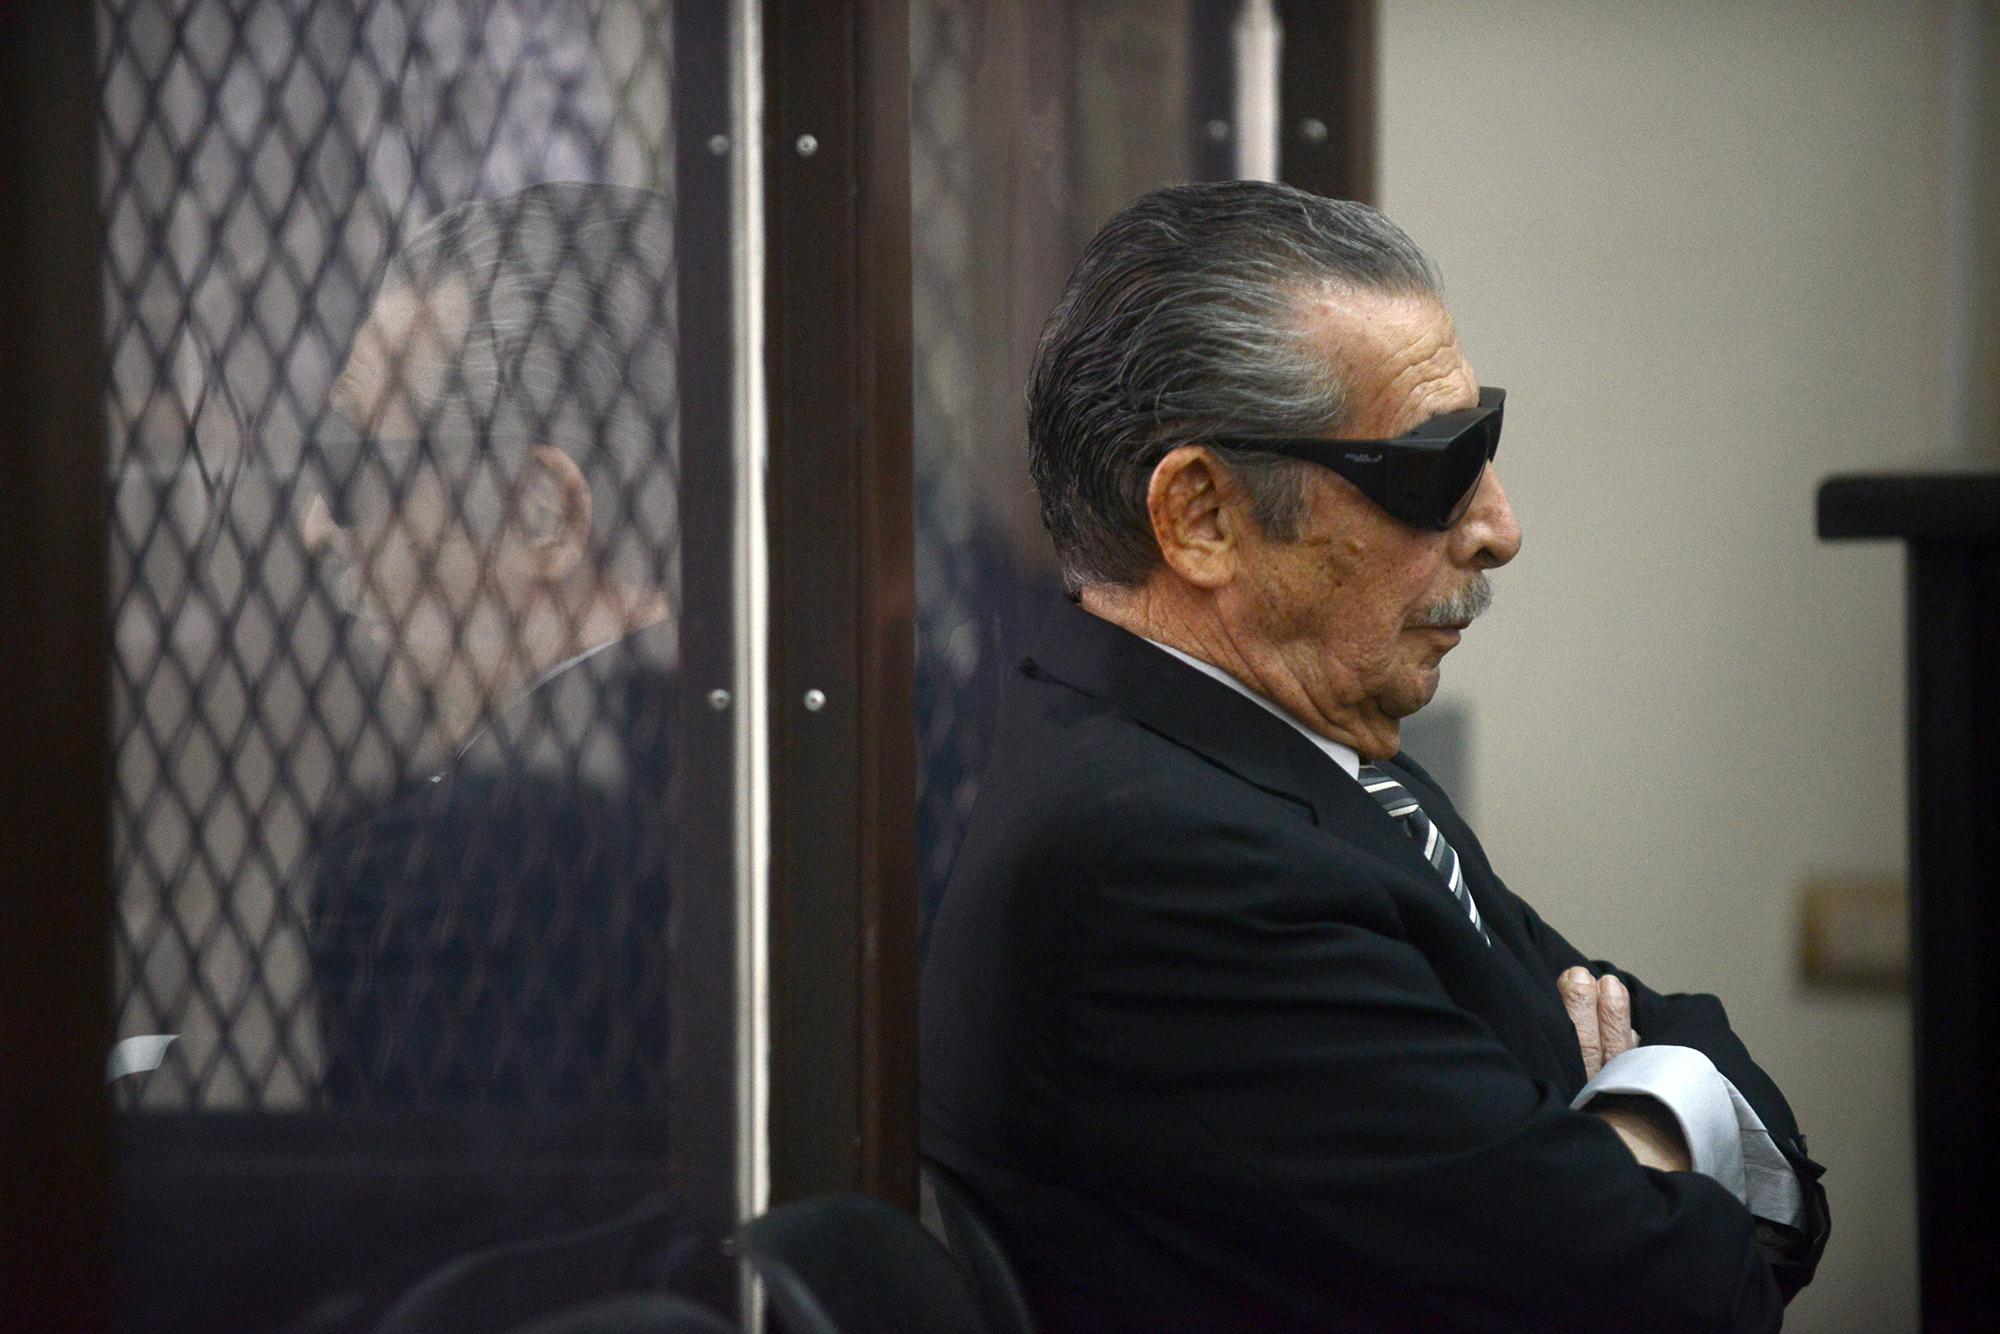 El ex presidente guatemalteco (1982-1983), el general retirado José Efrain Ríos Montt, de 86 años, con lentes oscuros prescritos después de la cirugía de catarata, durante una audiencia en la ciudad de Guatemala el 19 de noviembre de 2013.  FOTO:  Johan ORDONEZ / AFP PHOTO 